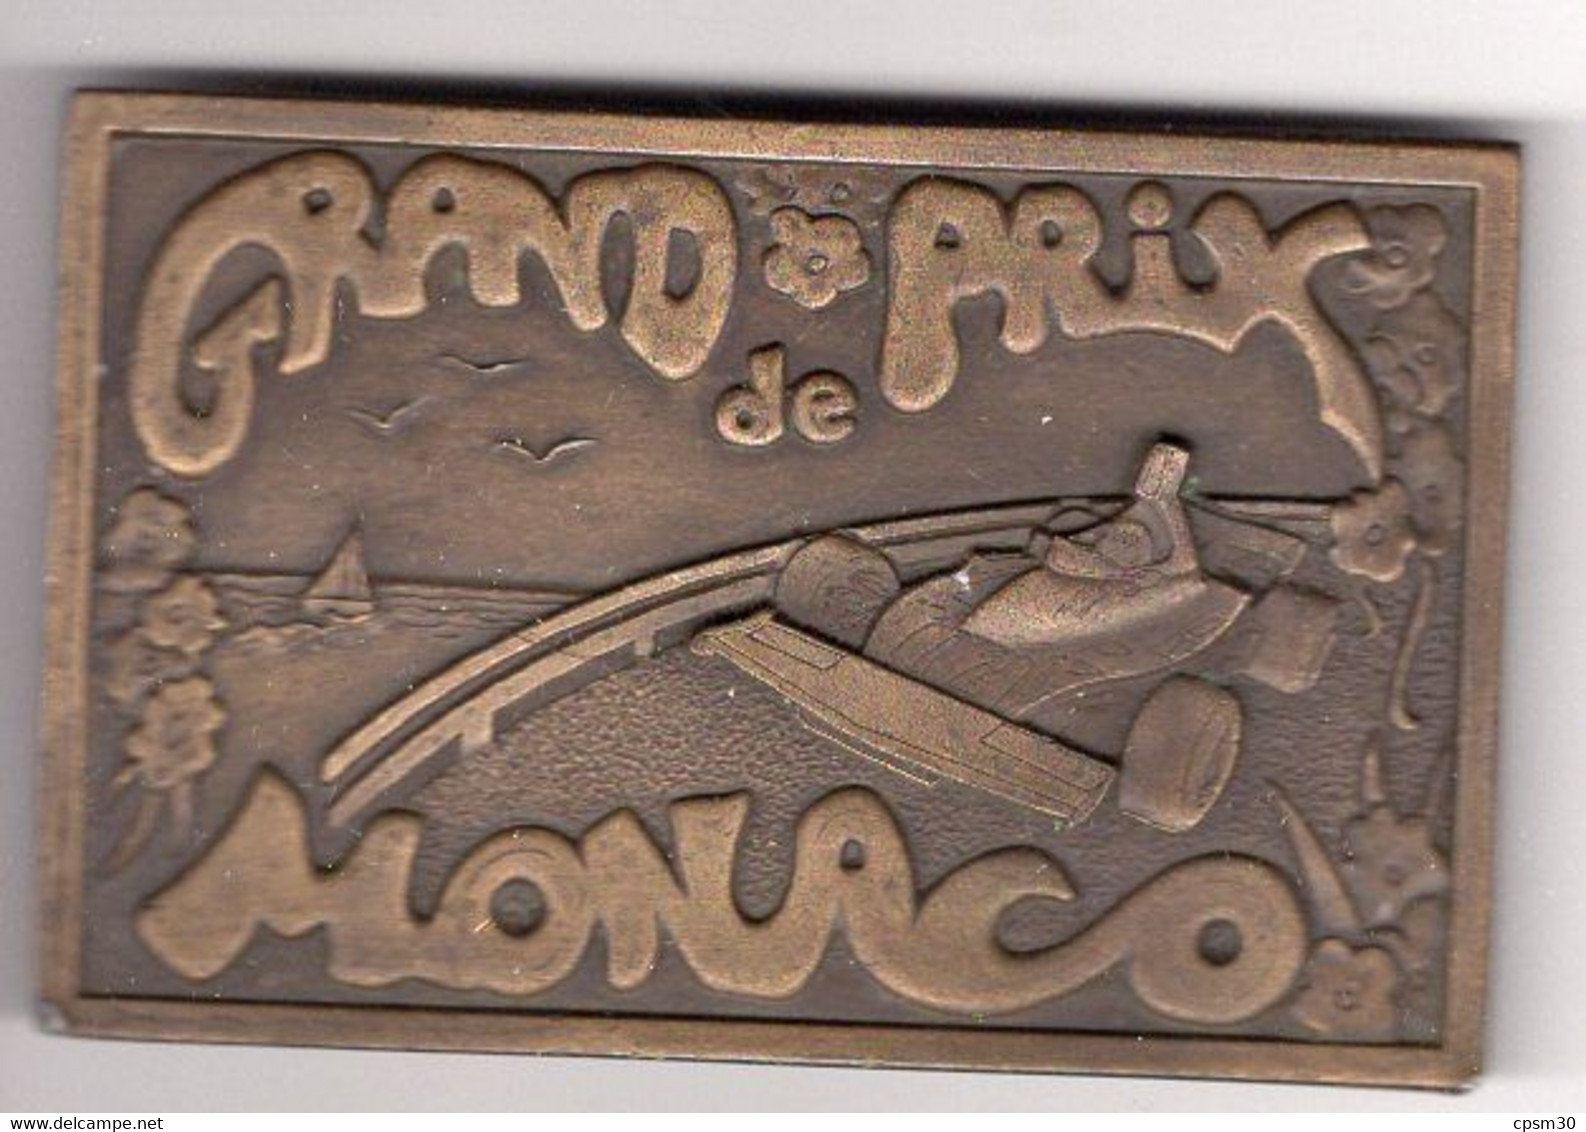 Boucle De Ceinture GRAND PRIX DE MONACO - Apparel, Souvenirs & Other